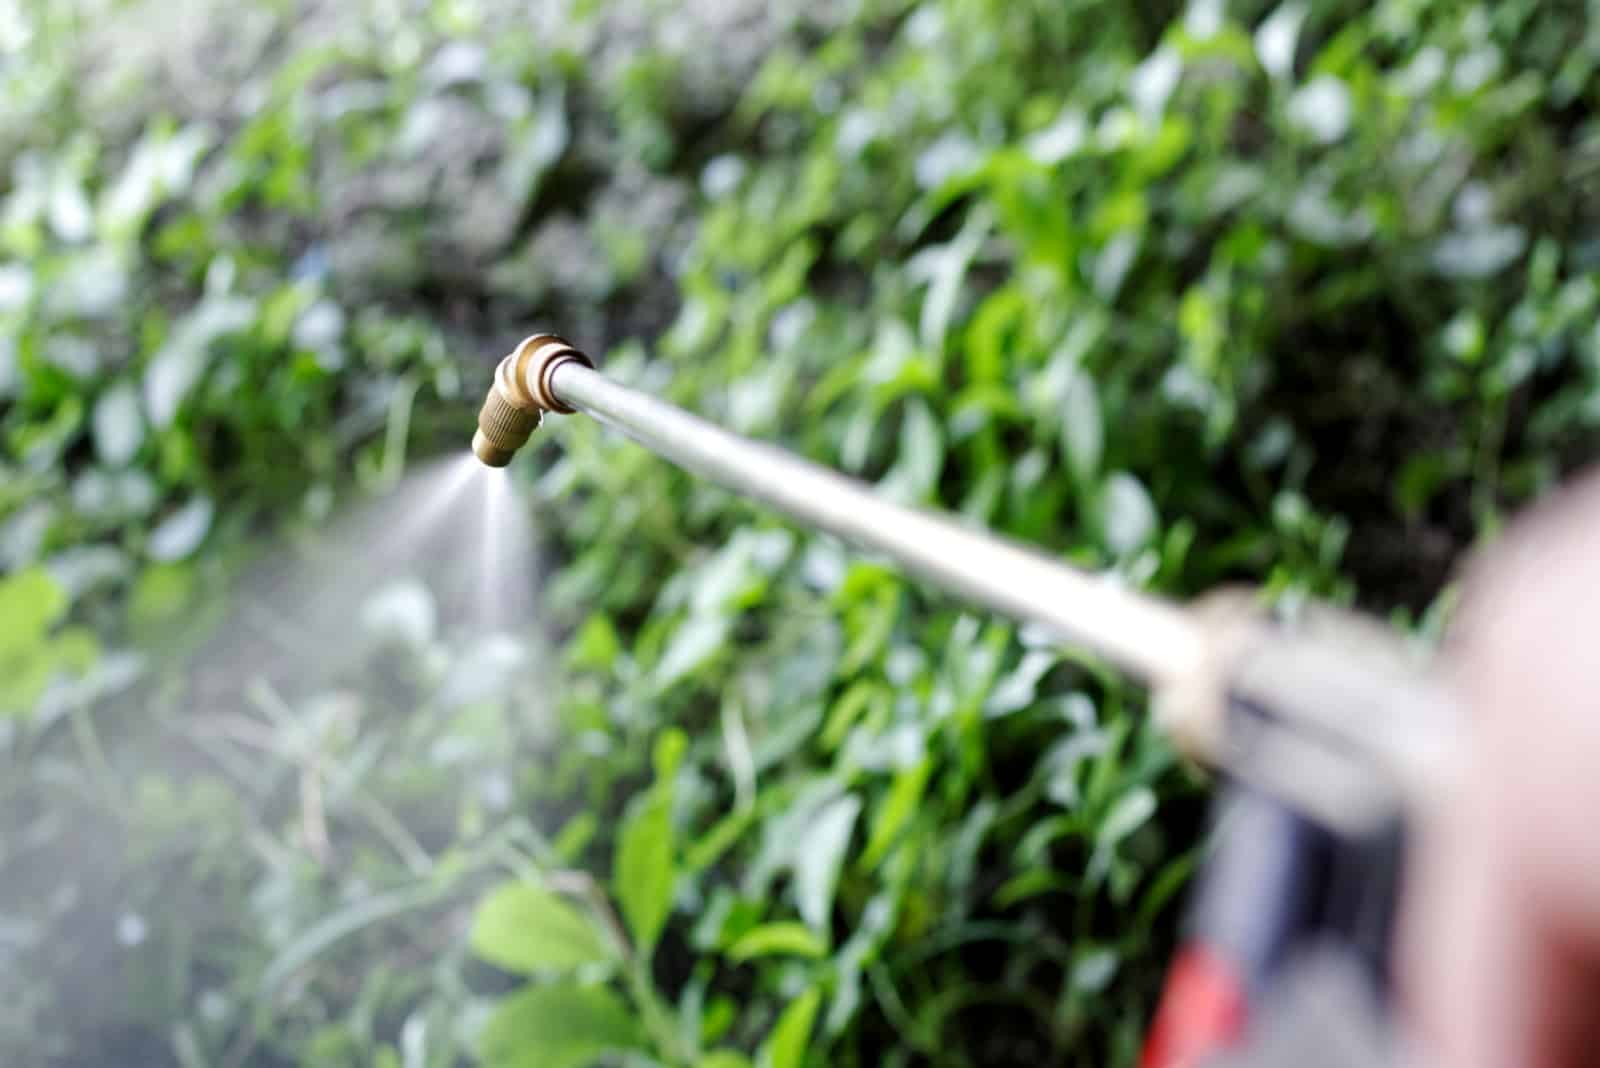 a person sprays a plant with a sprayer